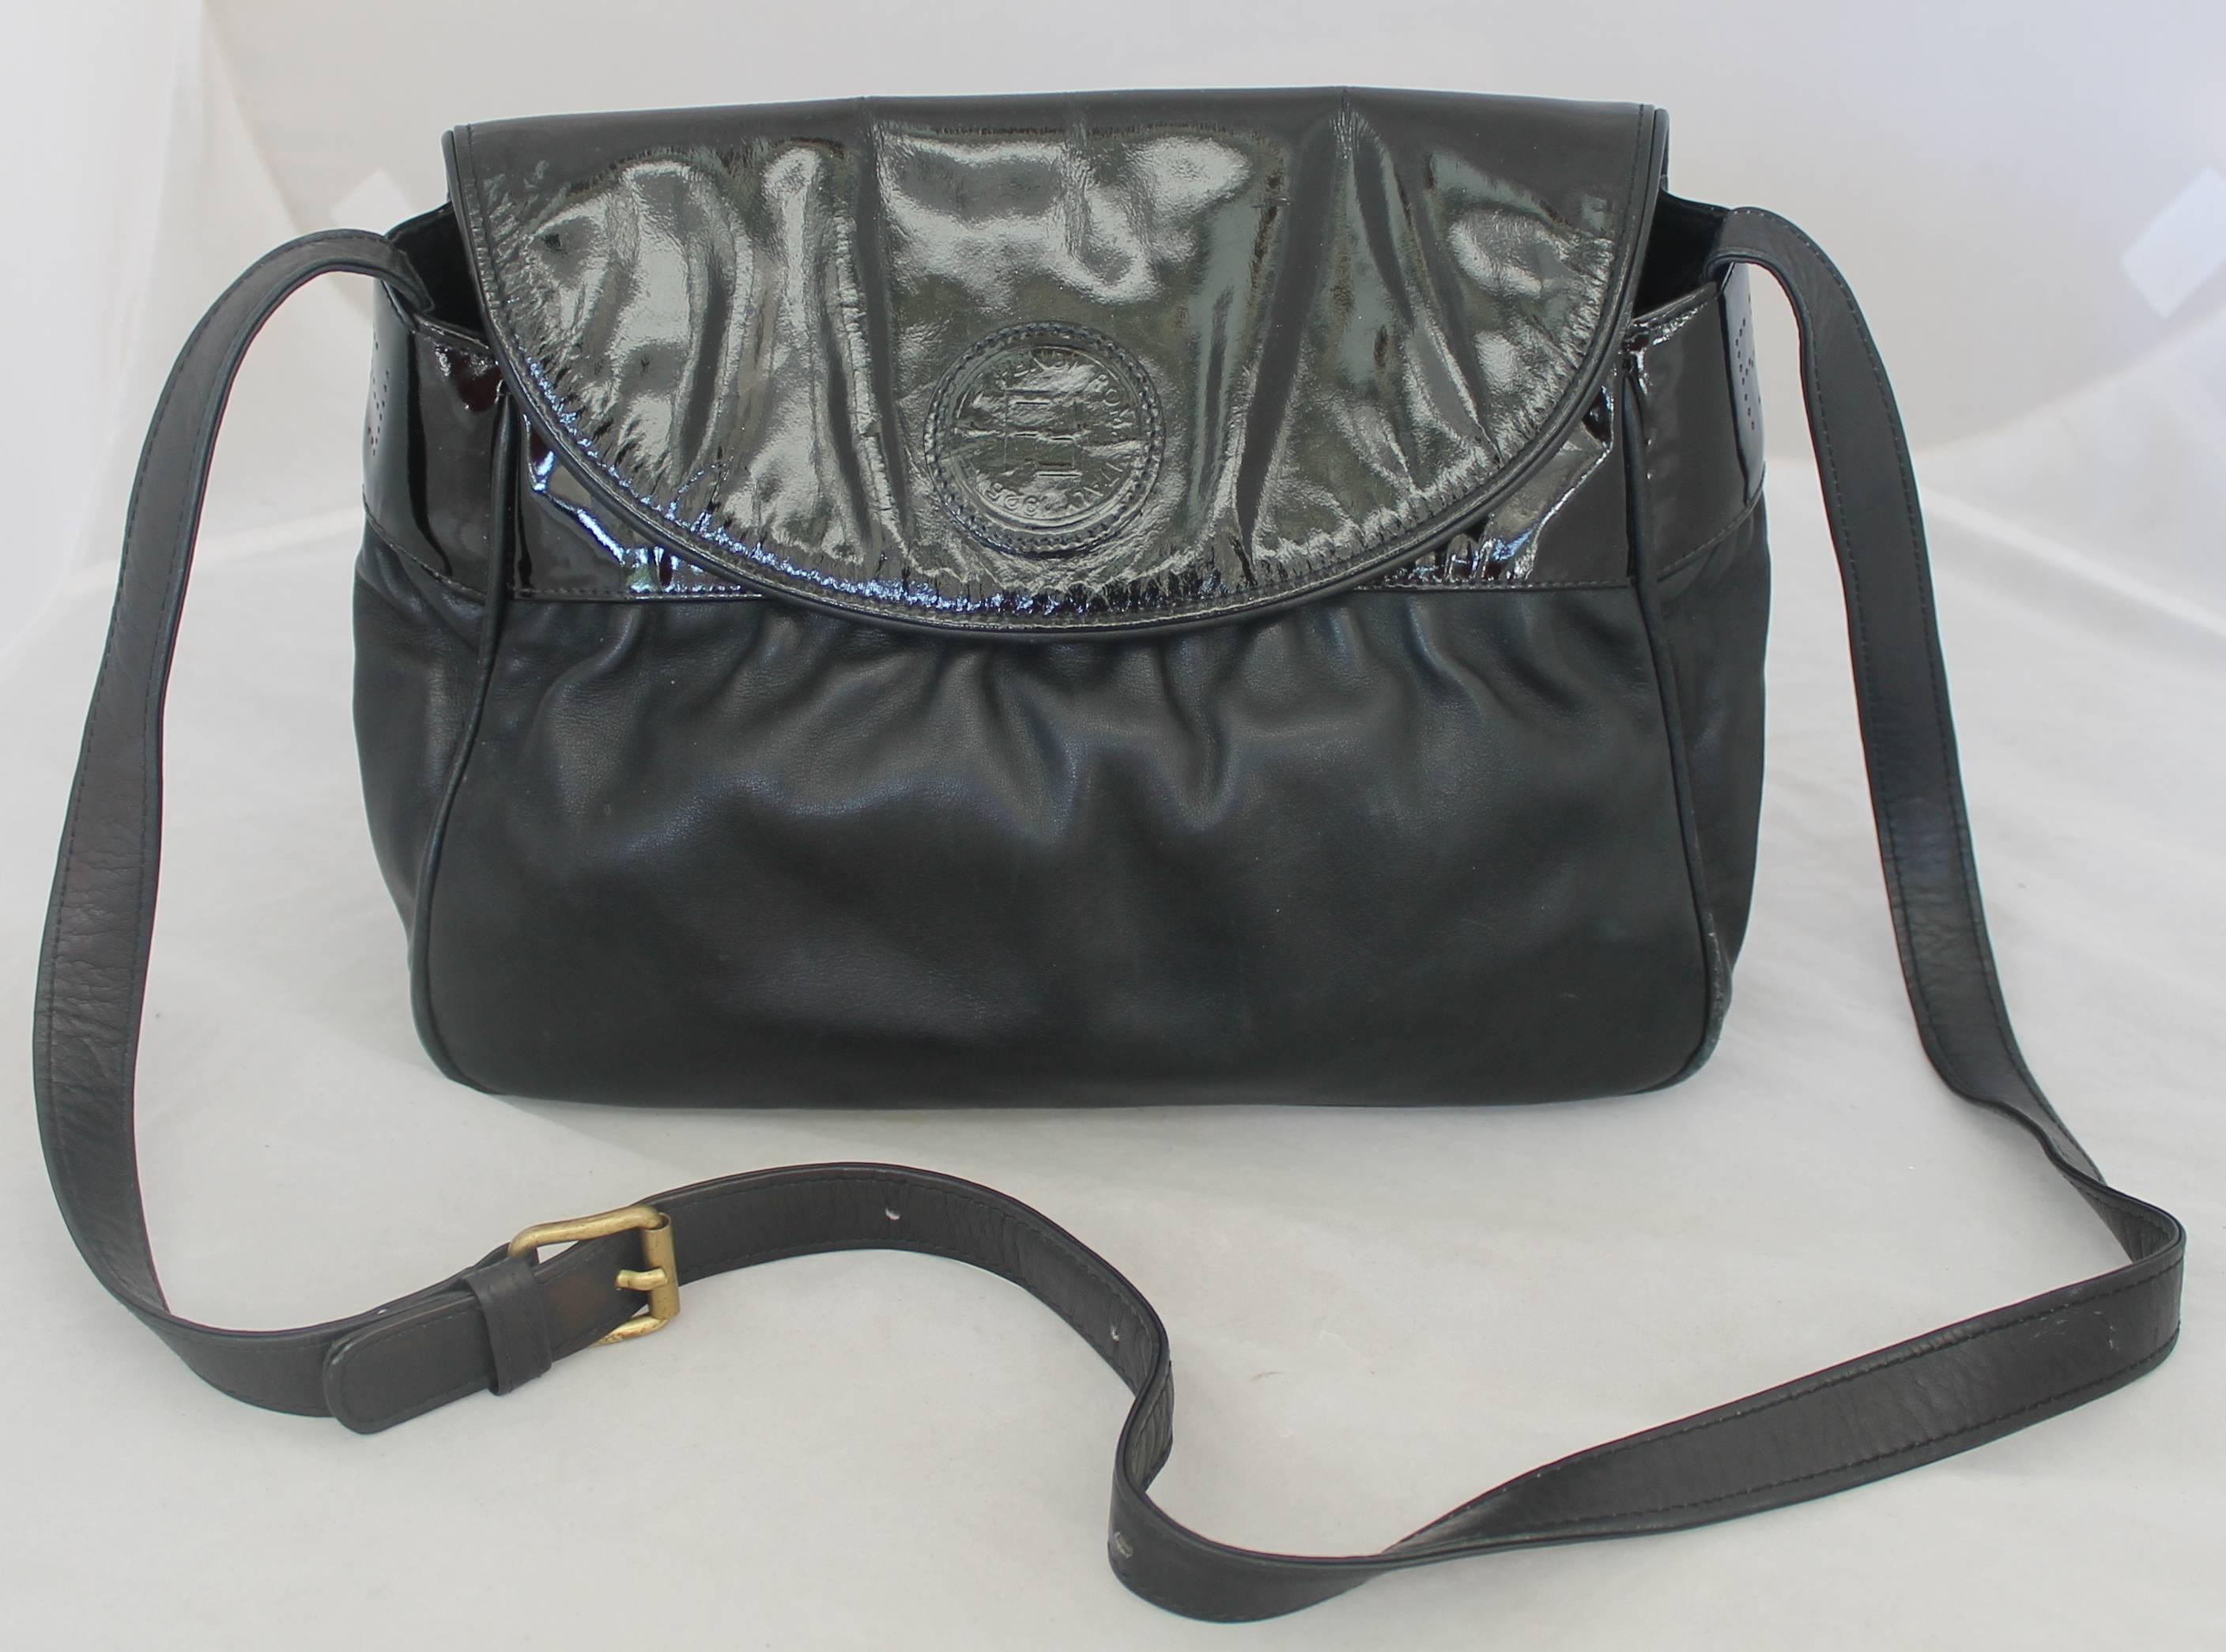 Fendi Vintage Black Leather & Patent Crossbody - Circa 1990er Jahre.  Diese schöne Fendi Tasche ist in gutem Vintage-Zustand mit nur einigen Verschleiß im Einklang mit seinem Alter.  Sie besteht aus schwarzem Leder und schwarzem Lack, dem Fendi-Logo